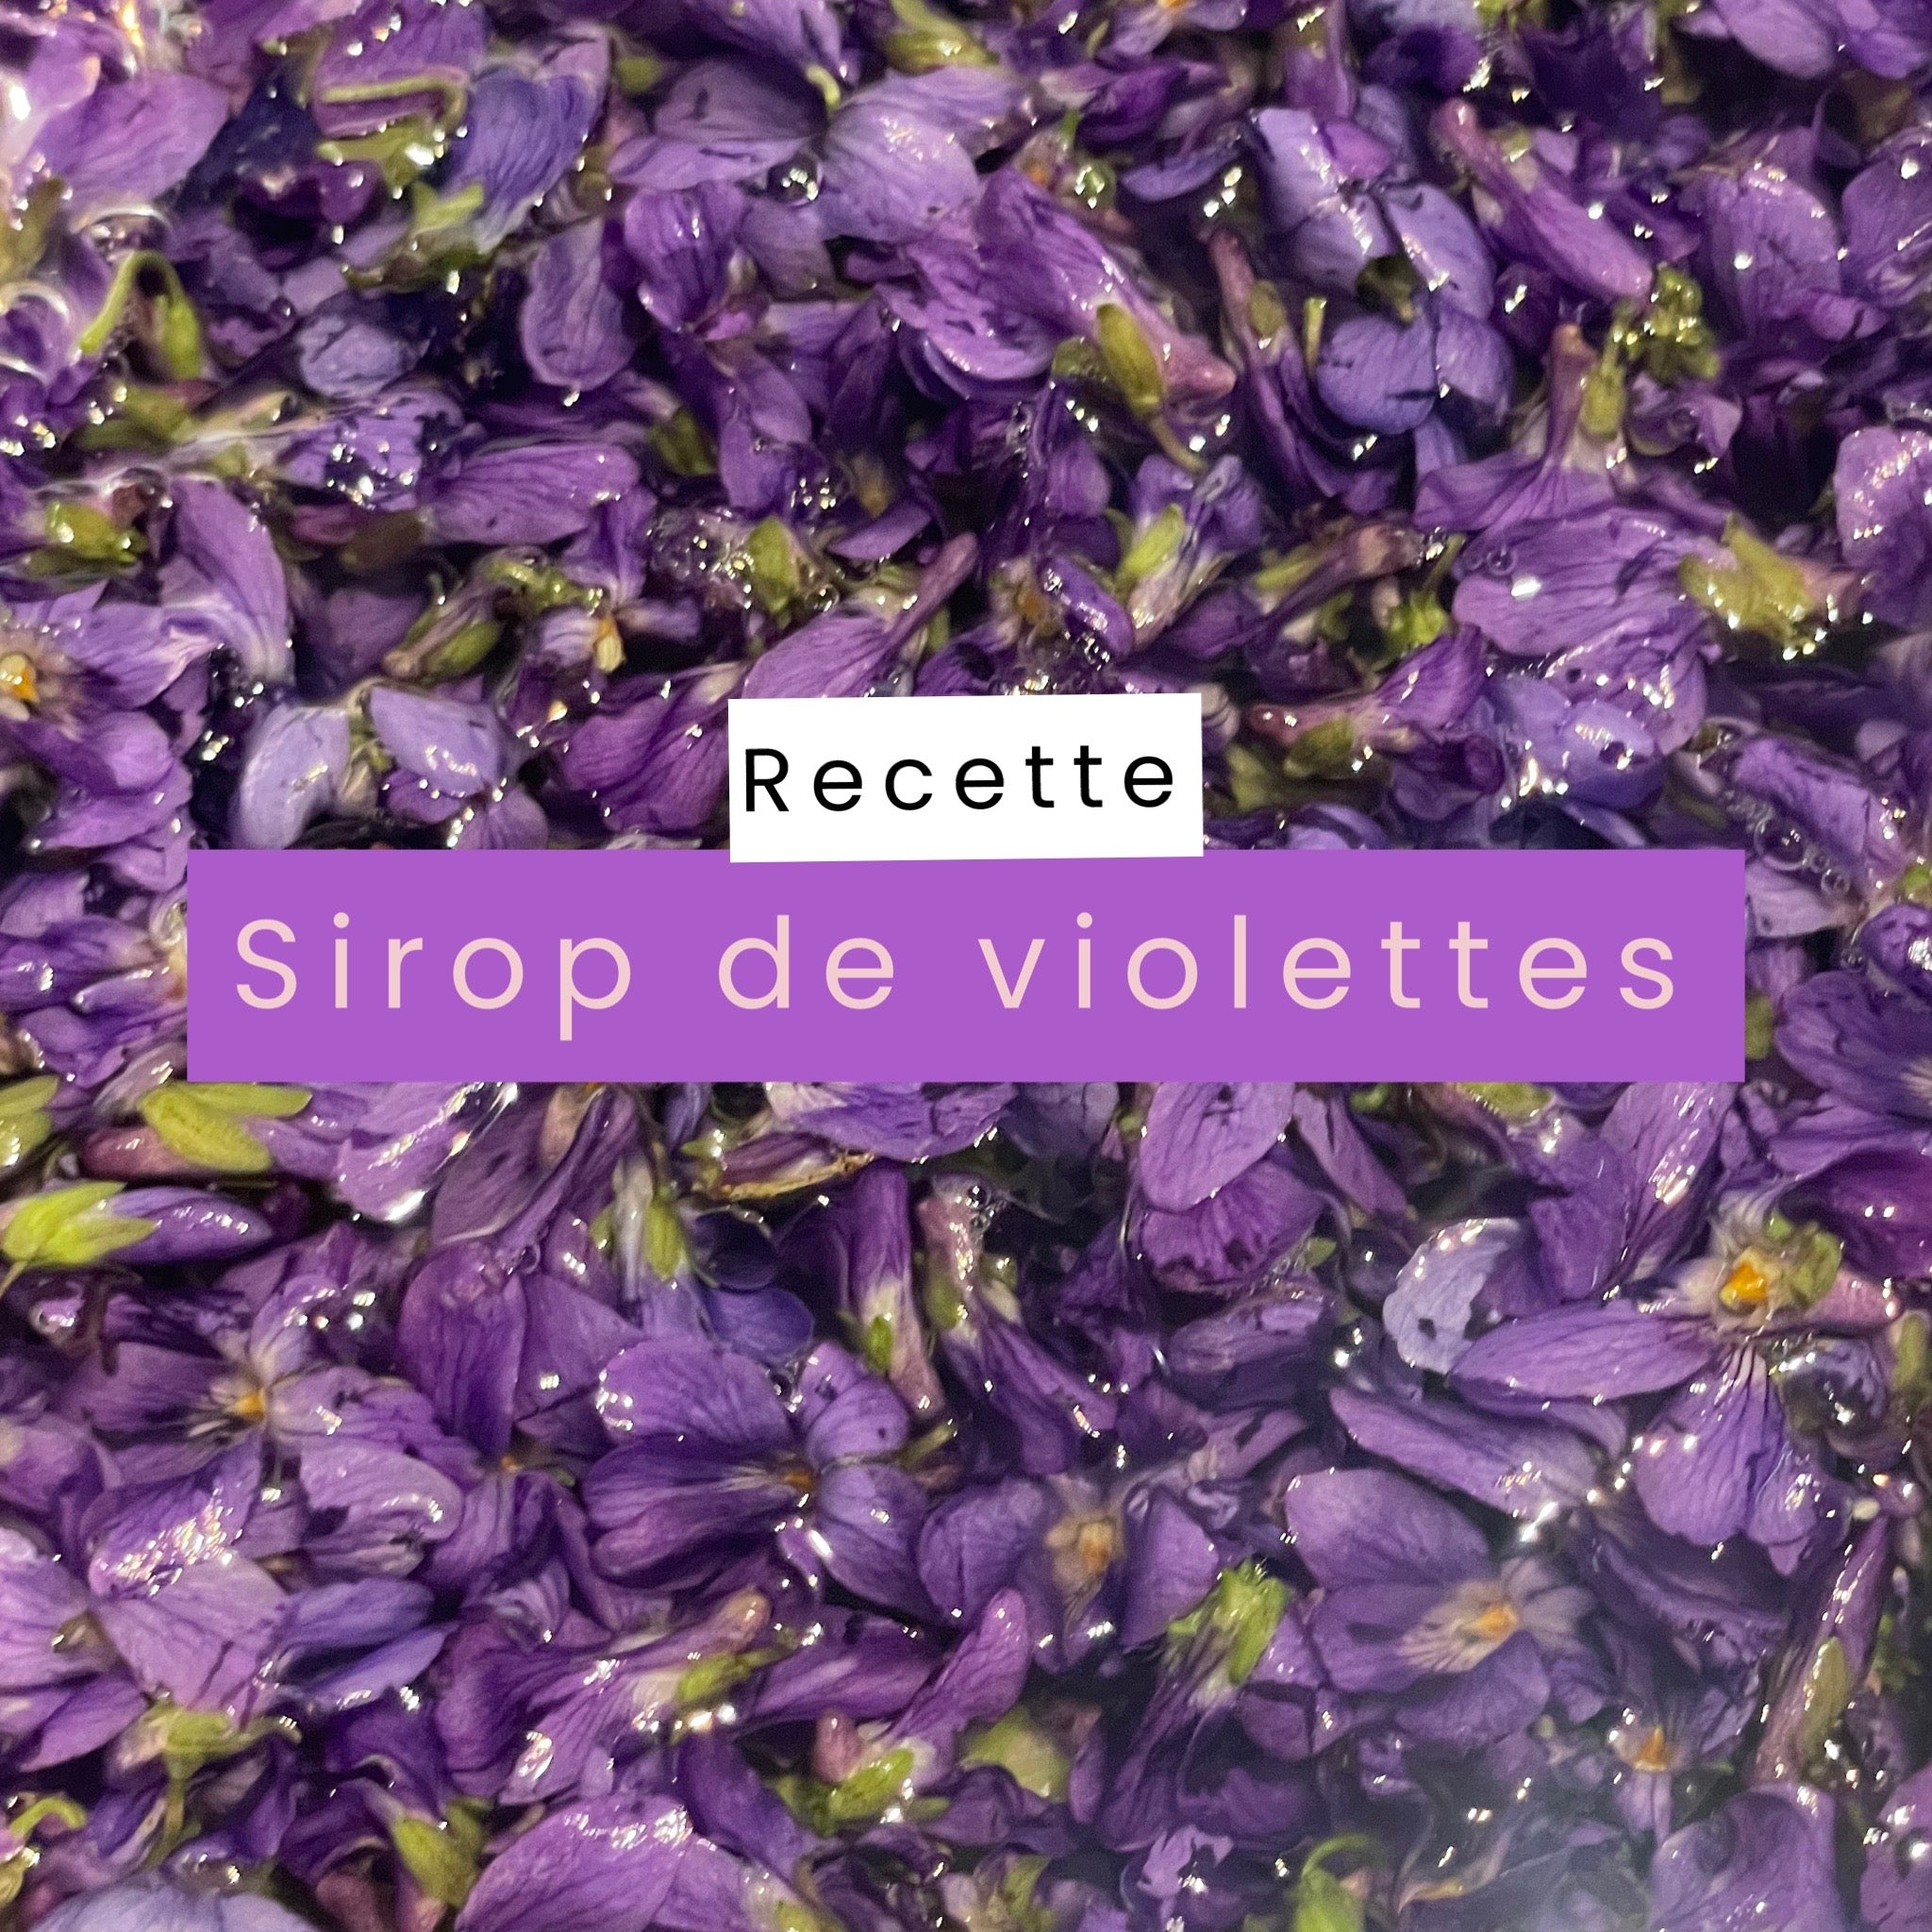 Sirop Violette